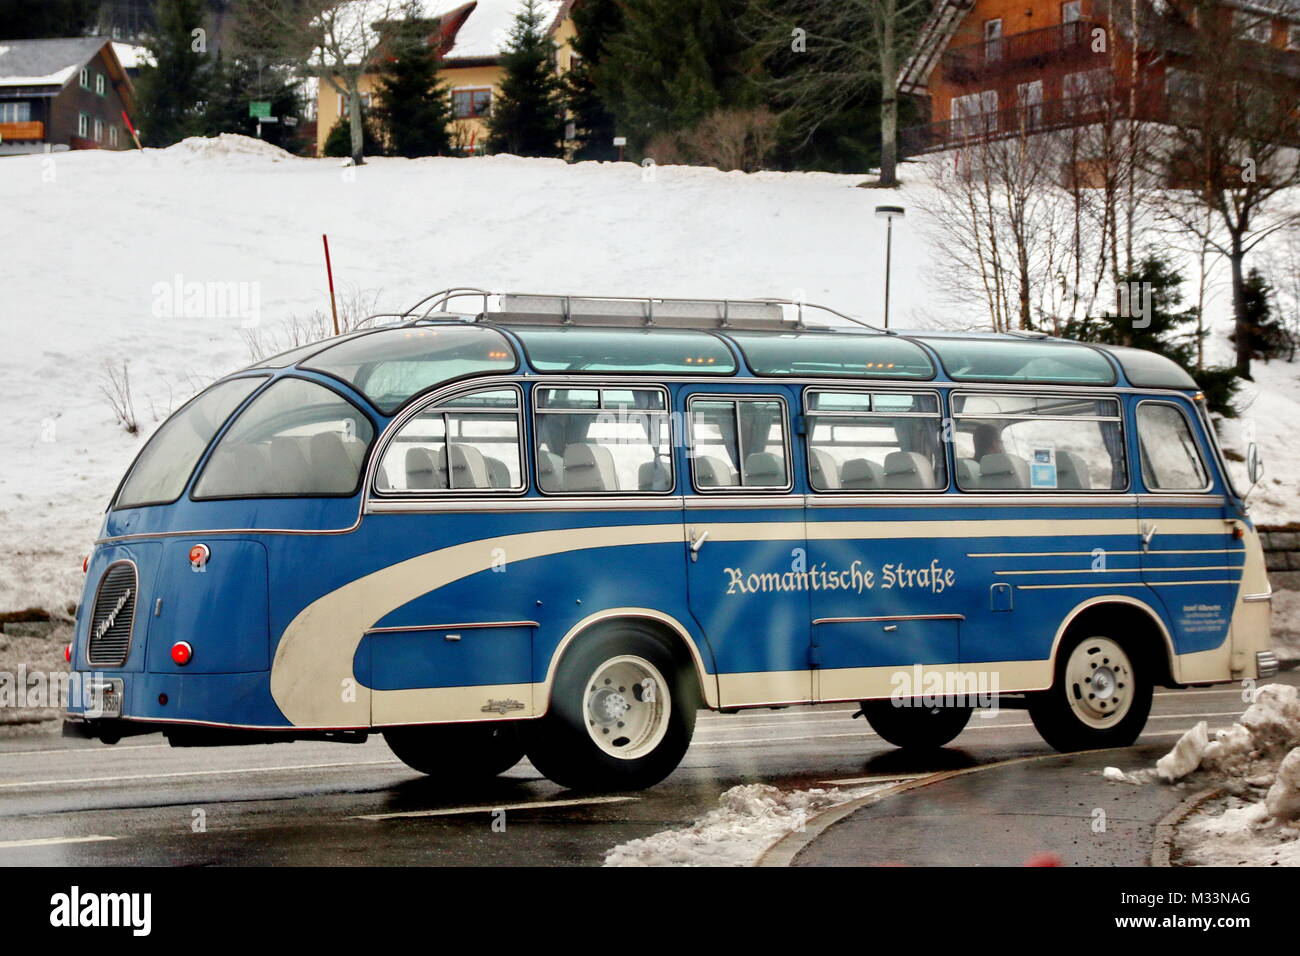 Historischer Reisebus 'Romantische Straße' bei Feldberg-Bärental Stock Photo